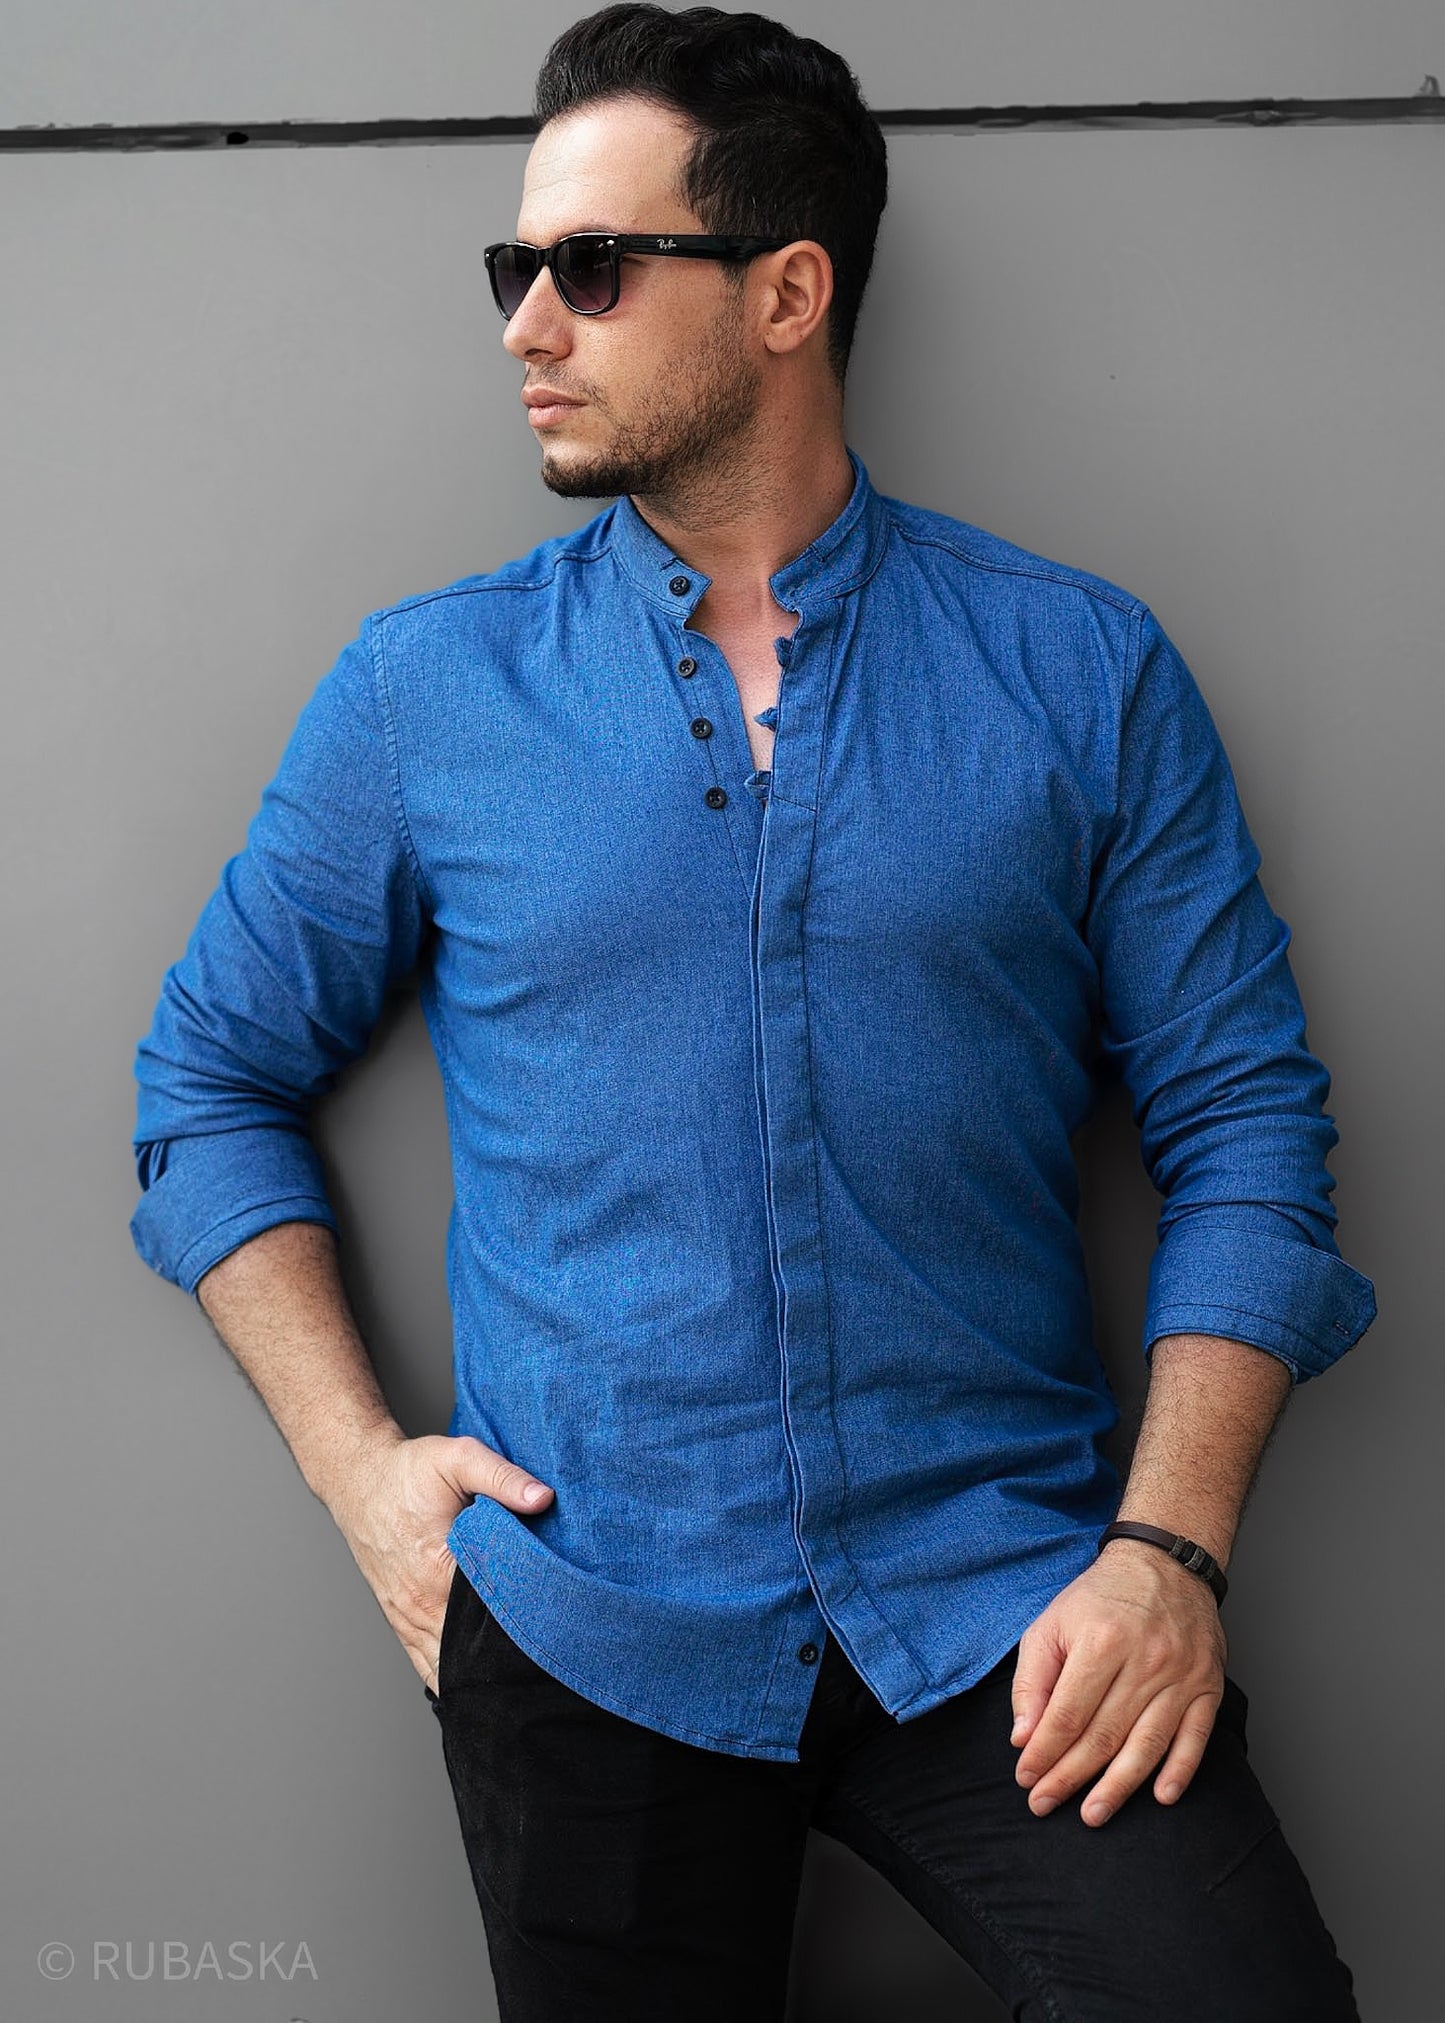 Синя сорочка чоловіча слім фіт із кольорового джинсу M L XL XXL 30-91-505